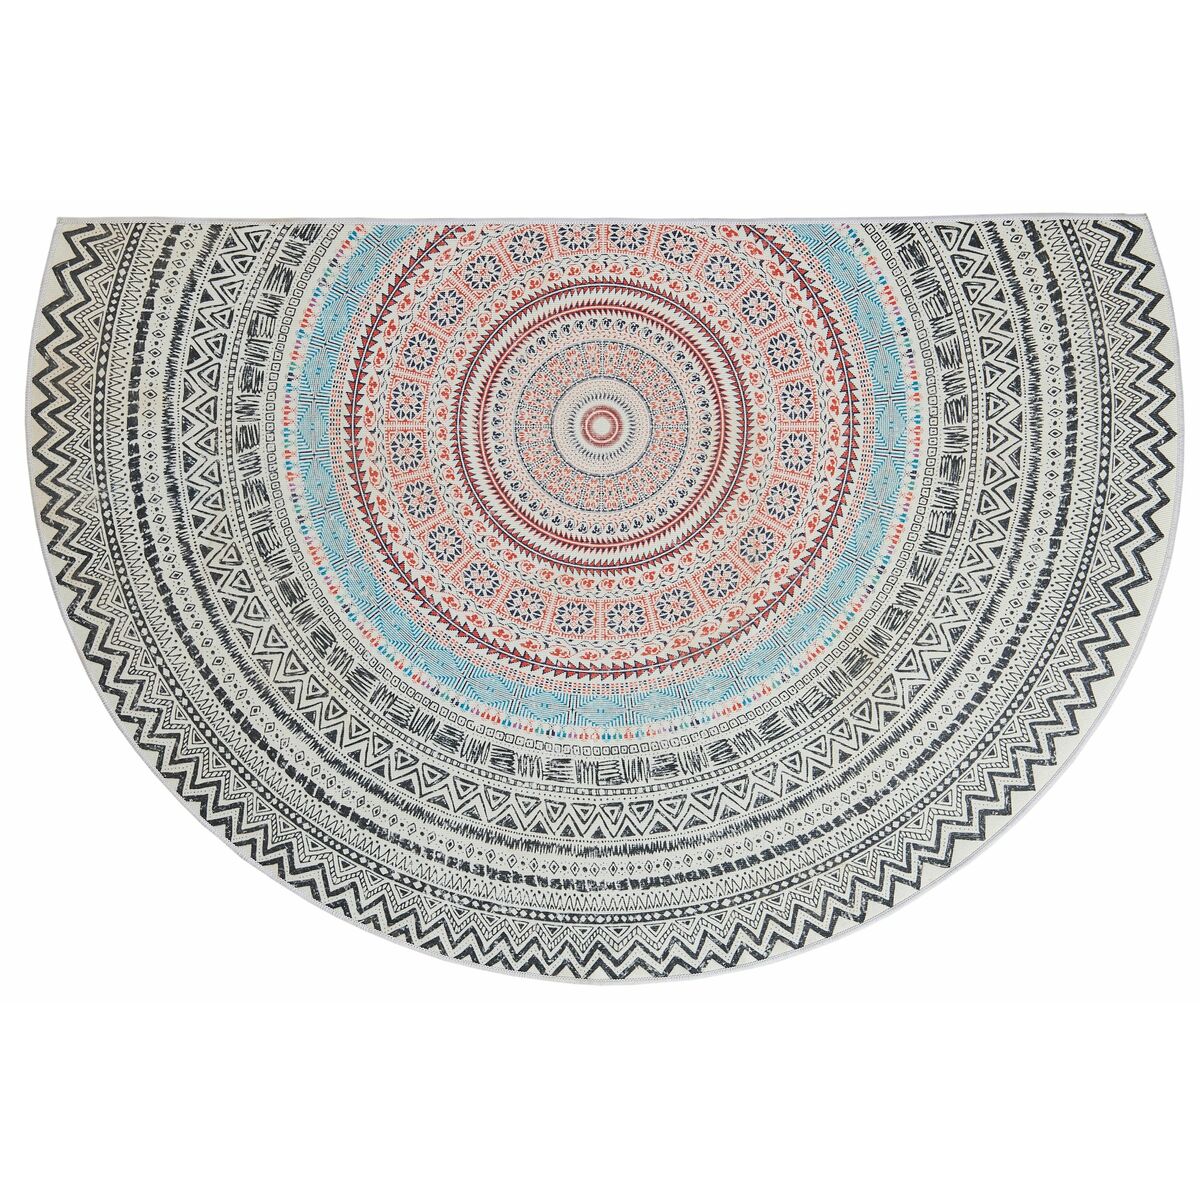 Dywanik półokrągły dekoracyjny LDY-68 pastelowy 90 x 60 cm